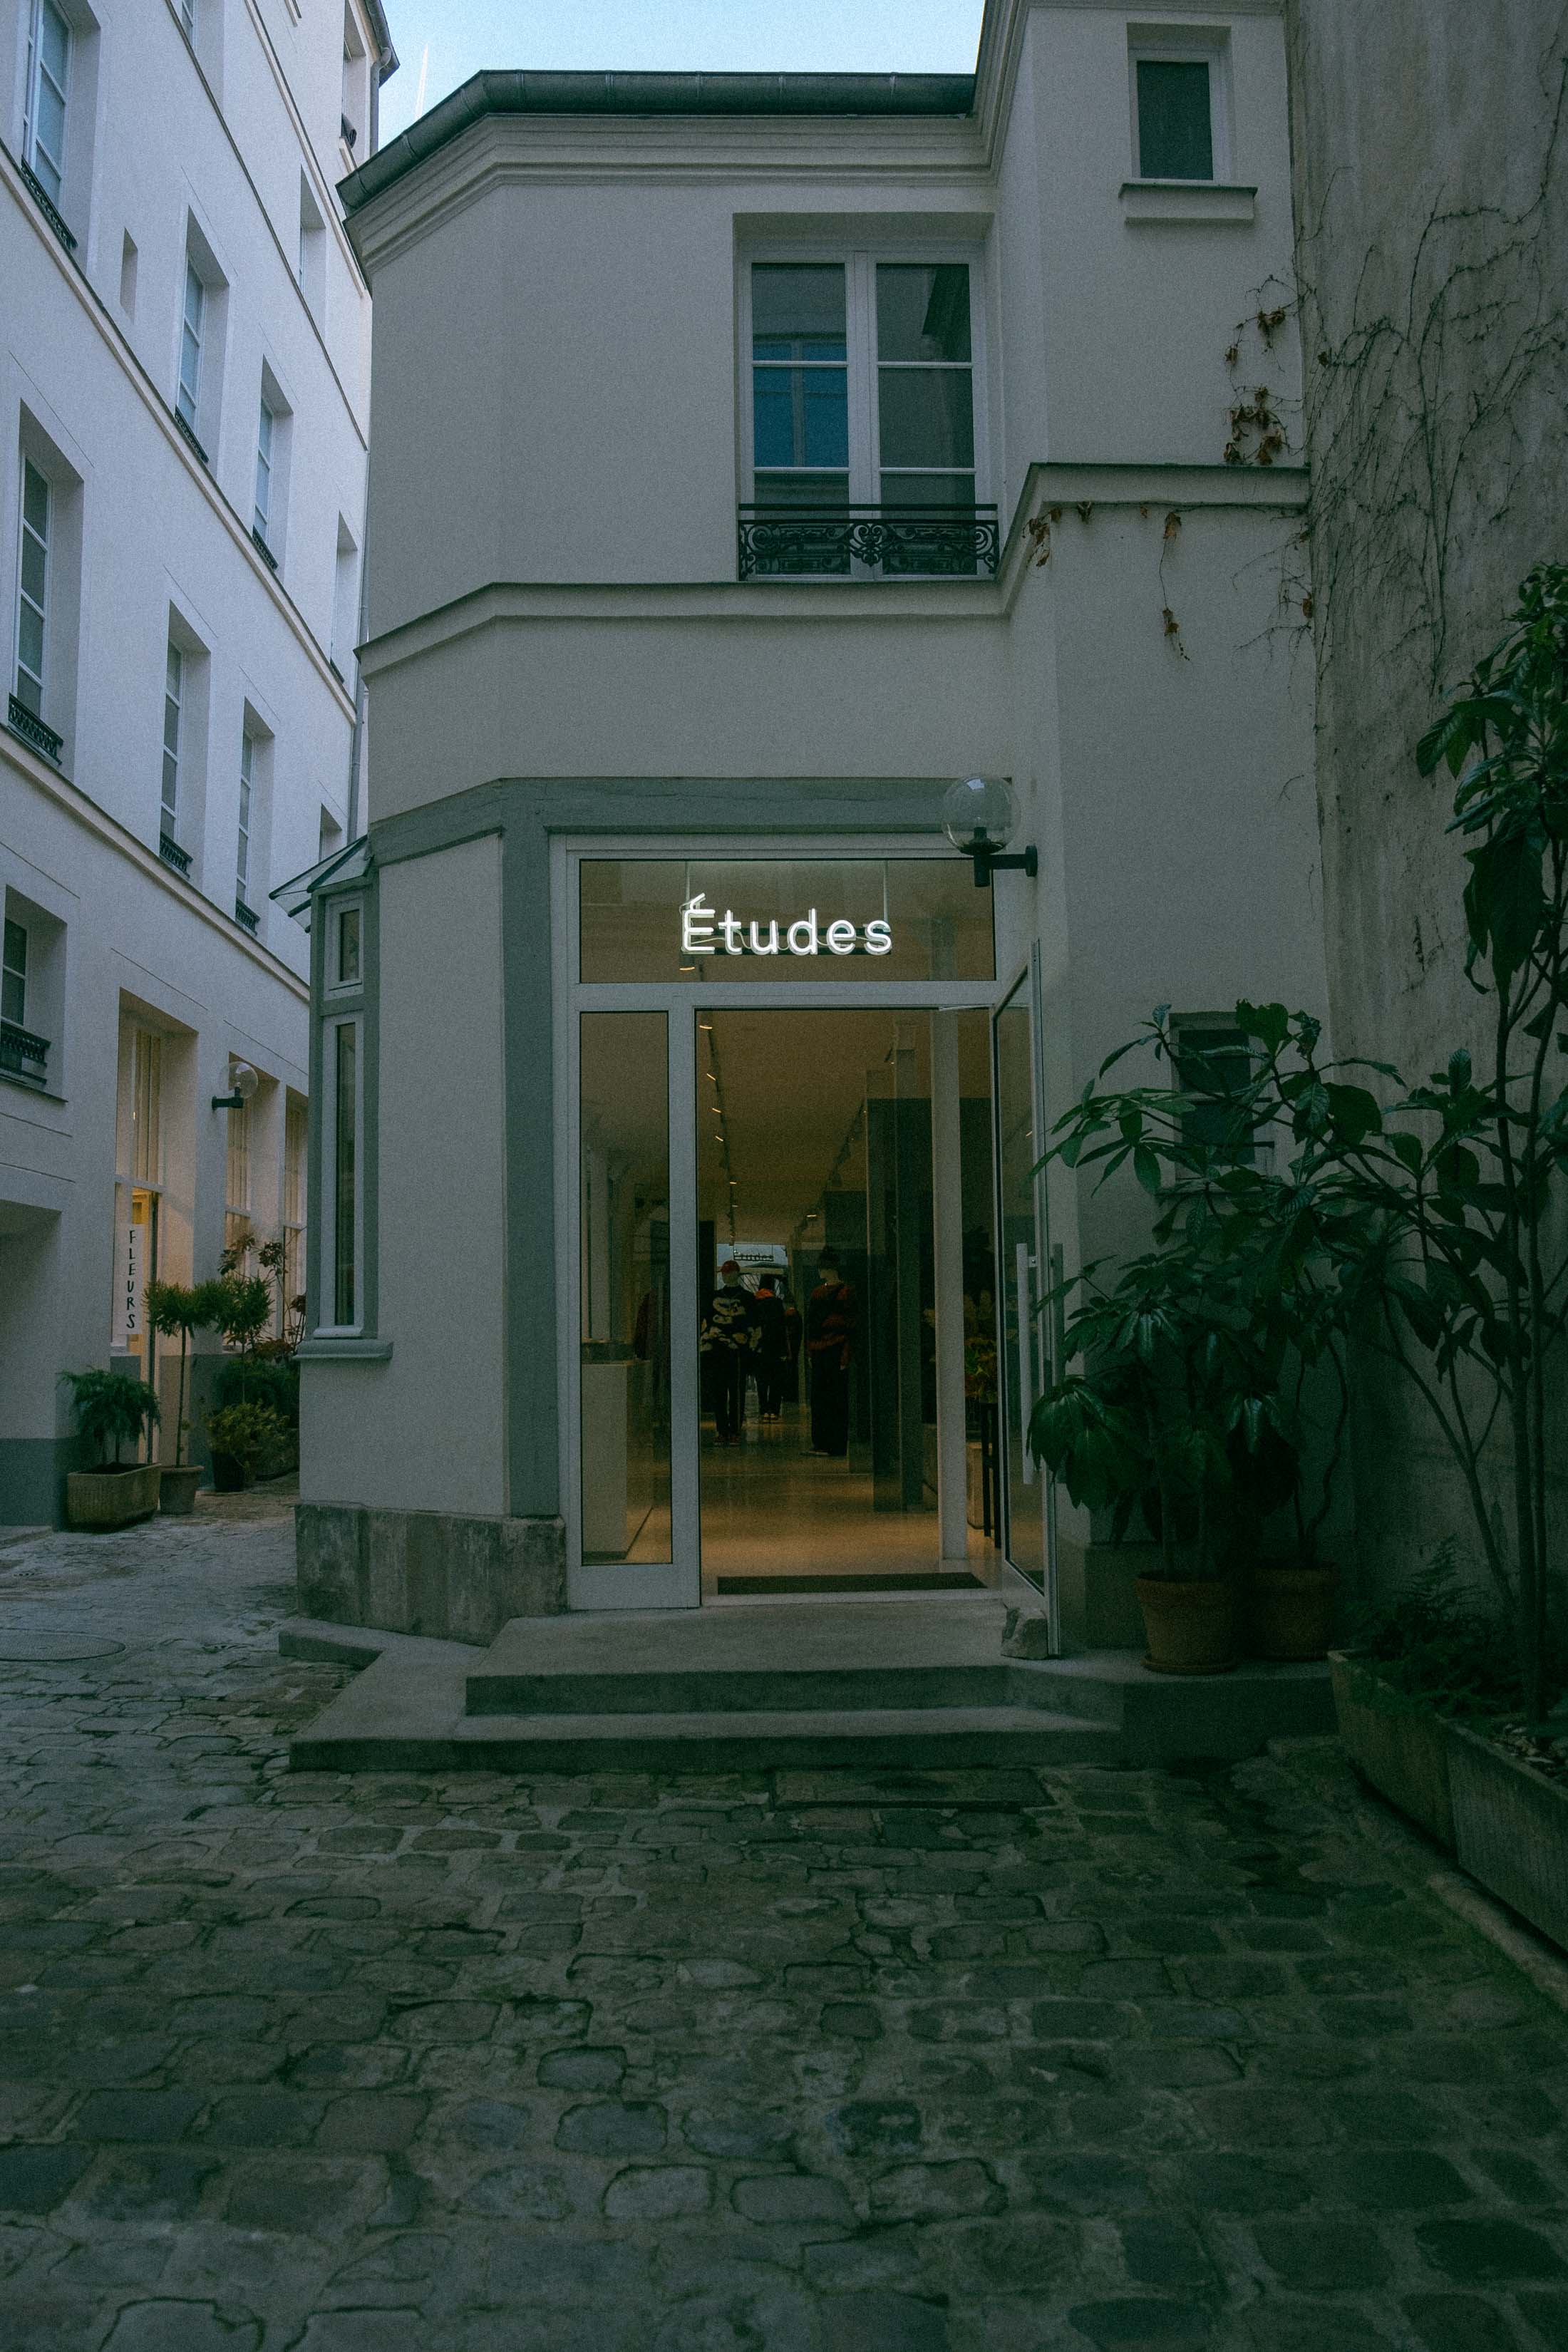 The Études boutique in Le Marais Paris